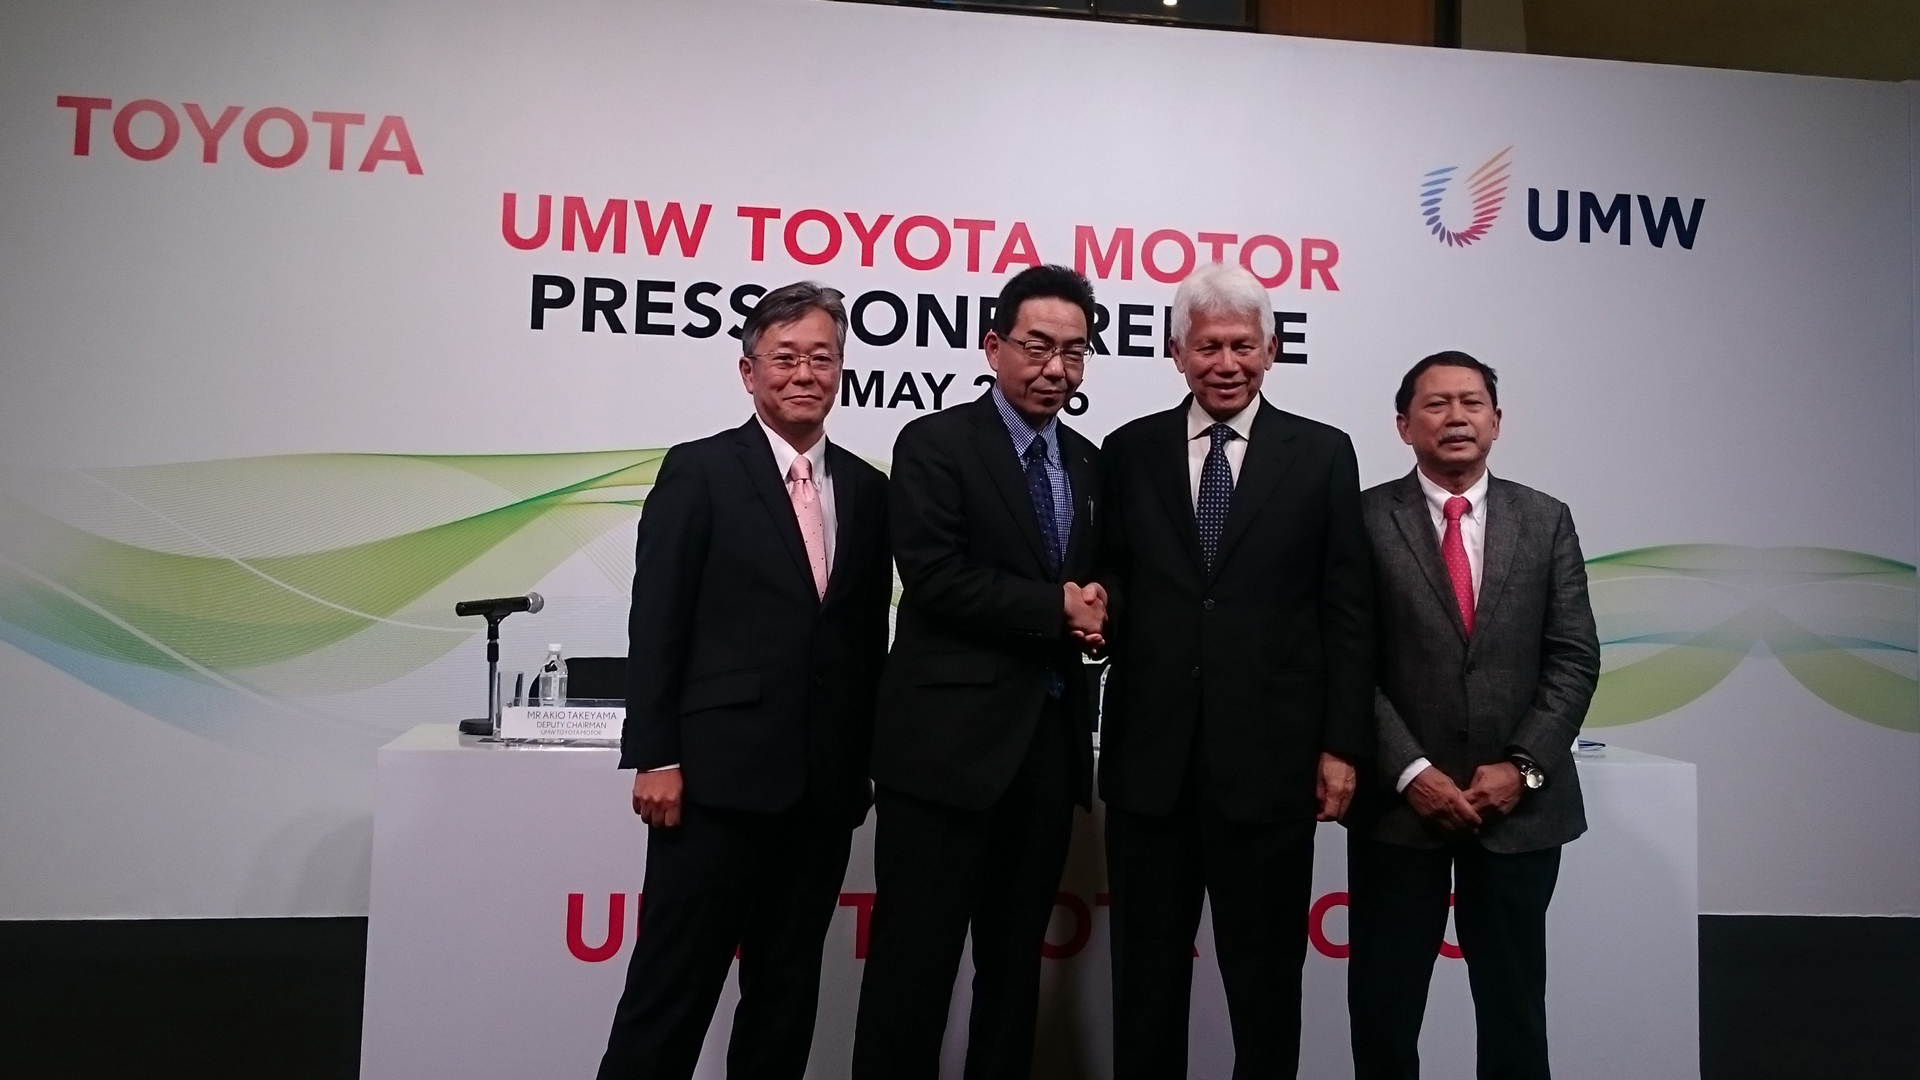 マレーシア生産体制再編を発表 左から、UMWT 武山副会長、トヨタ自動車 高見常務役員、UMW Asmat会長、UMWT Ismet社長